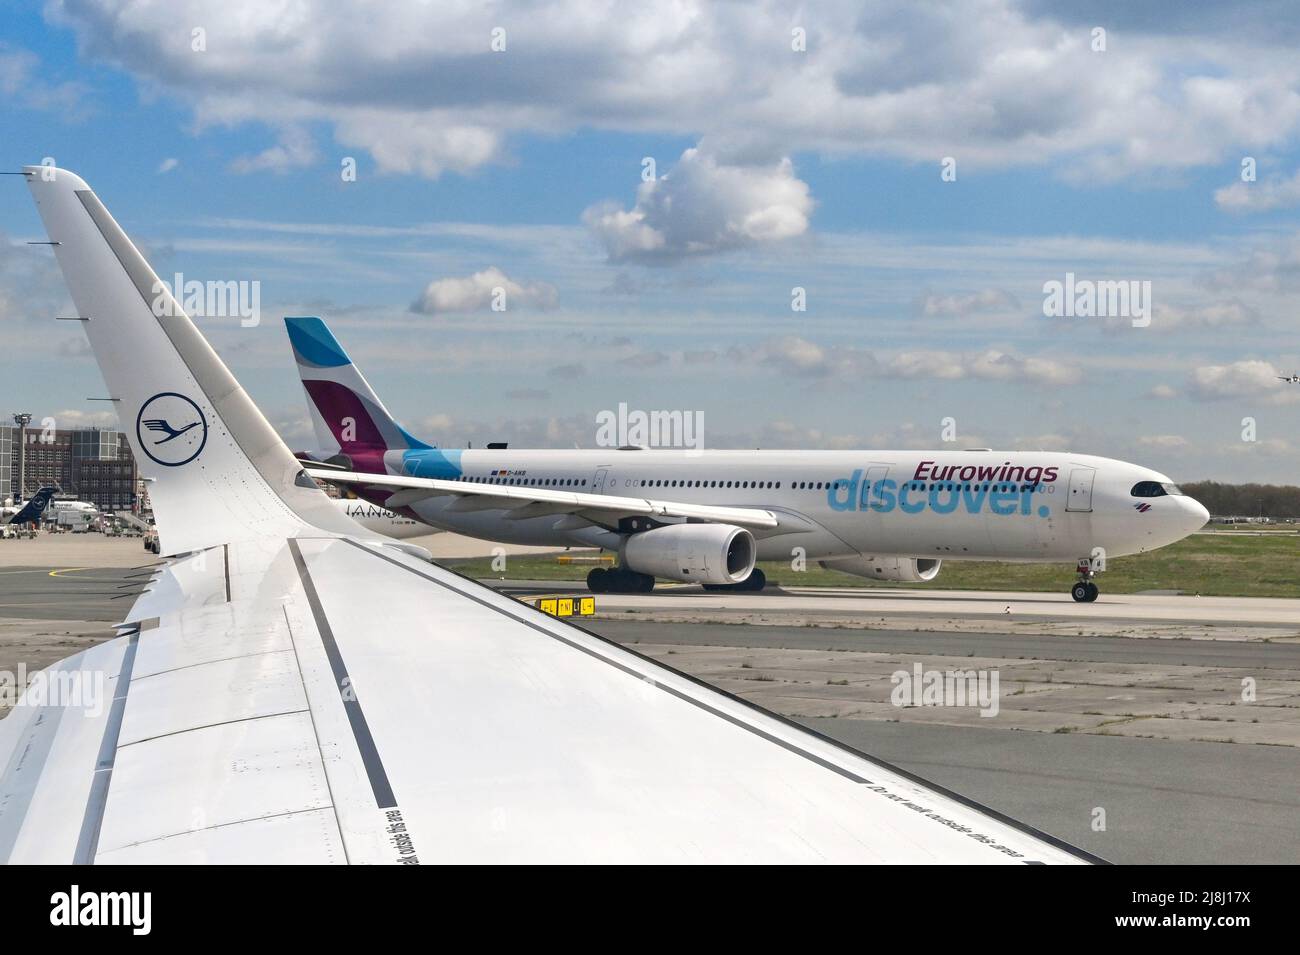 Francoforte, Germania - Aprile 2022: Airbus A330 passeggeri jet gestito dalla compagnia aerea tedesca Eurowings, controllata al 100% da Lufthansa. Foto Stock